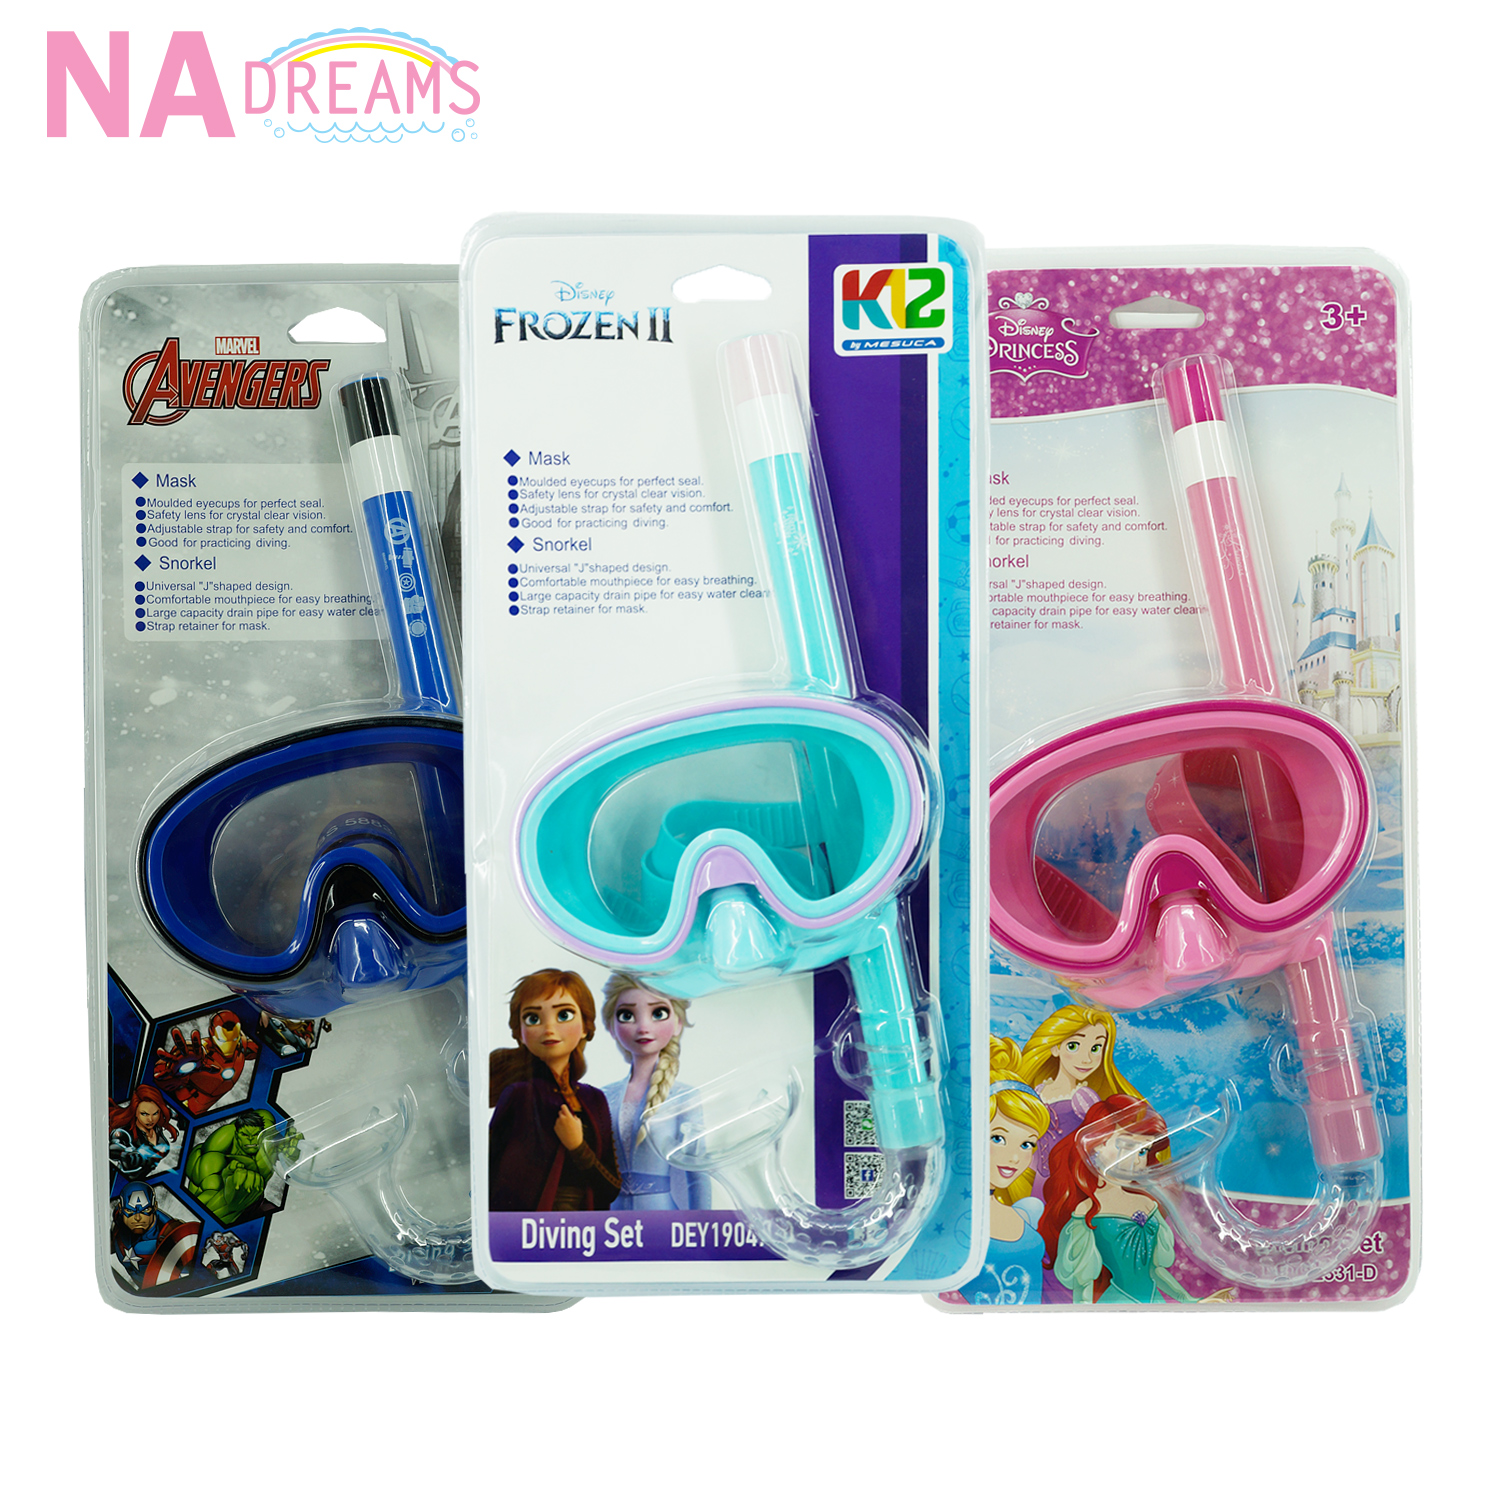 NADreams หน้ากากดำน้ำ หน้ากากดำน้ำเด็ก ลายการ์ตูน โฟรเซ่น Frozen, เจ้าหญิง Princess, อเวนเจอร์ Avengers แว่นตาว่ายน้ำ